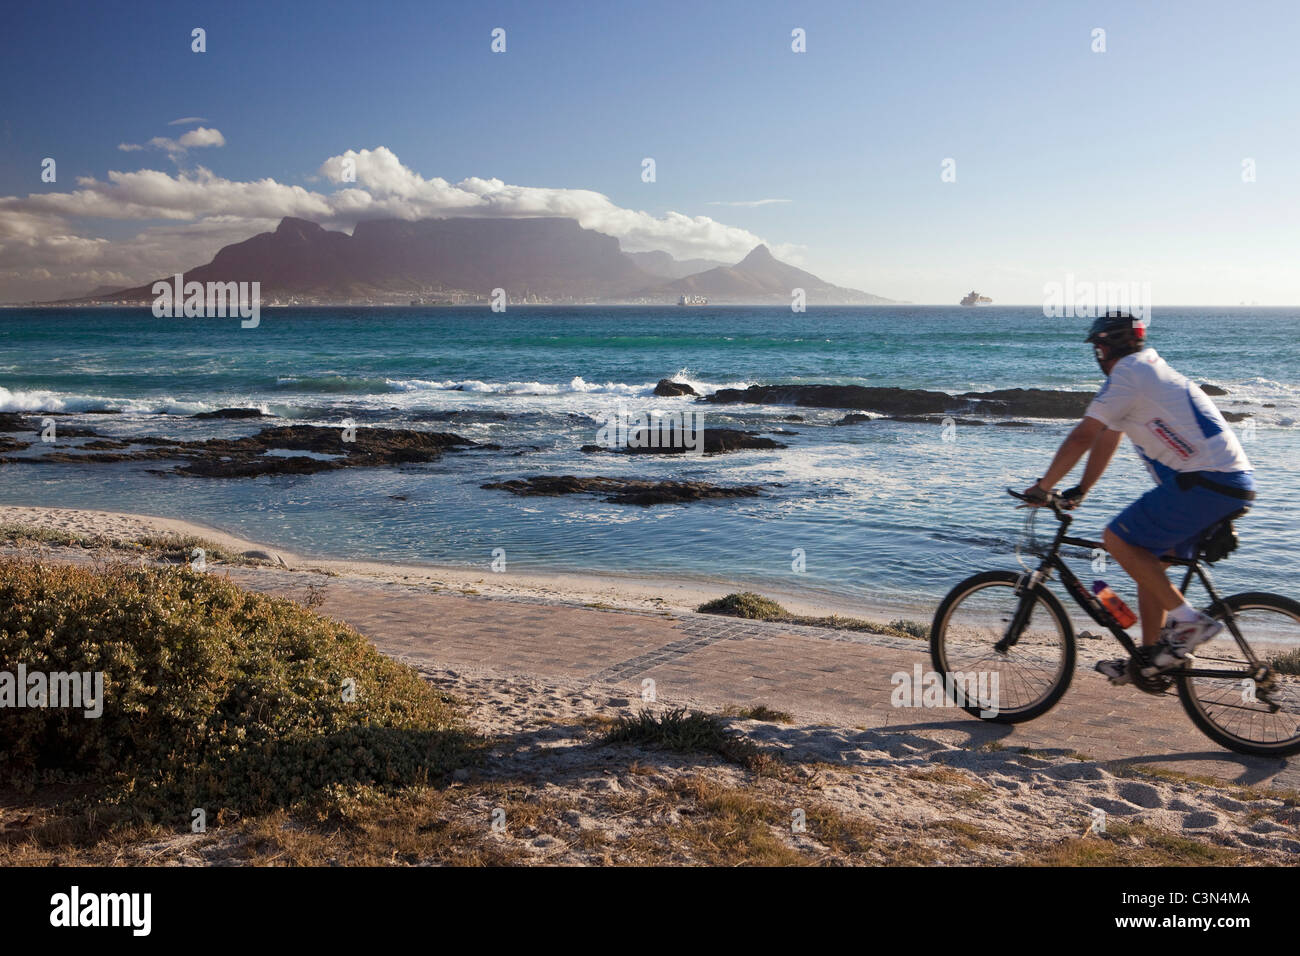 L'Afrique du Sud, Cape Town, Blouberg beach. Cycliste. Contexte : la montagne de la table. Banque D'Images